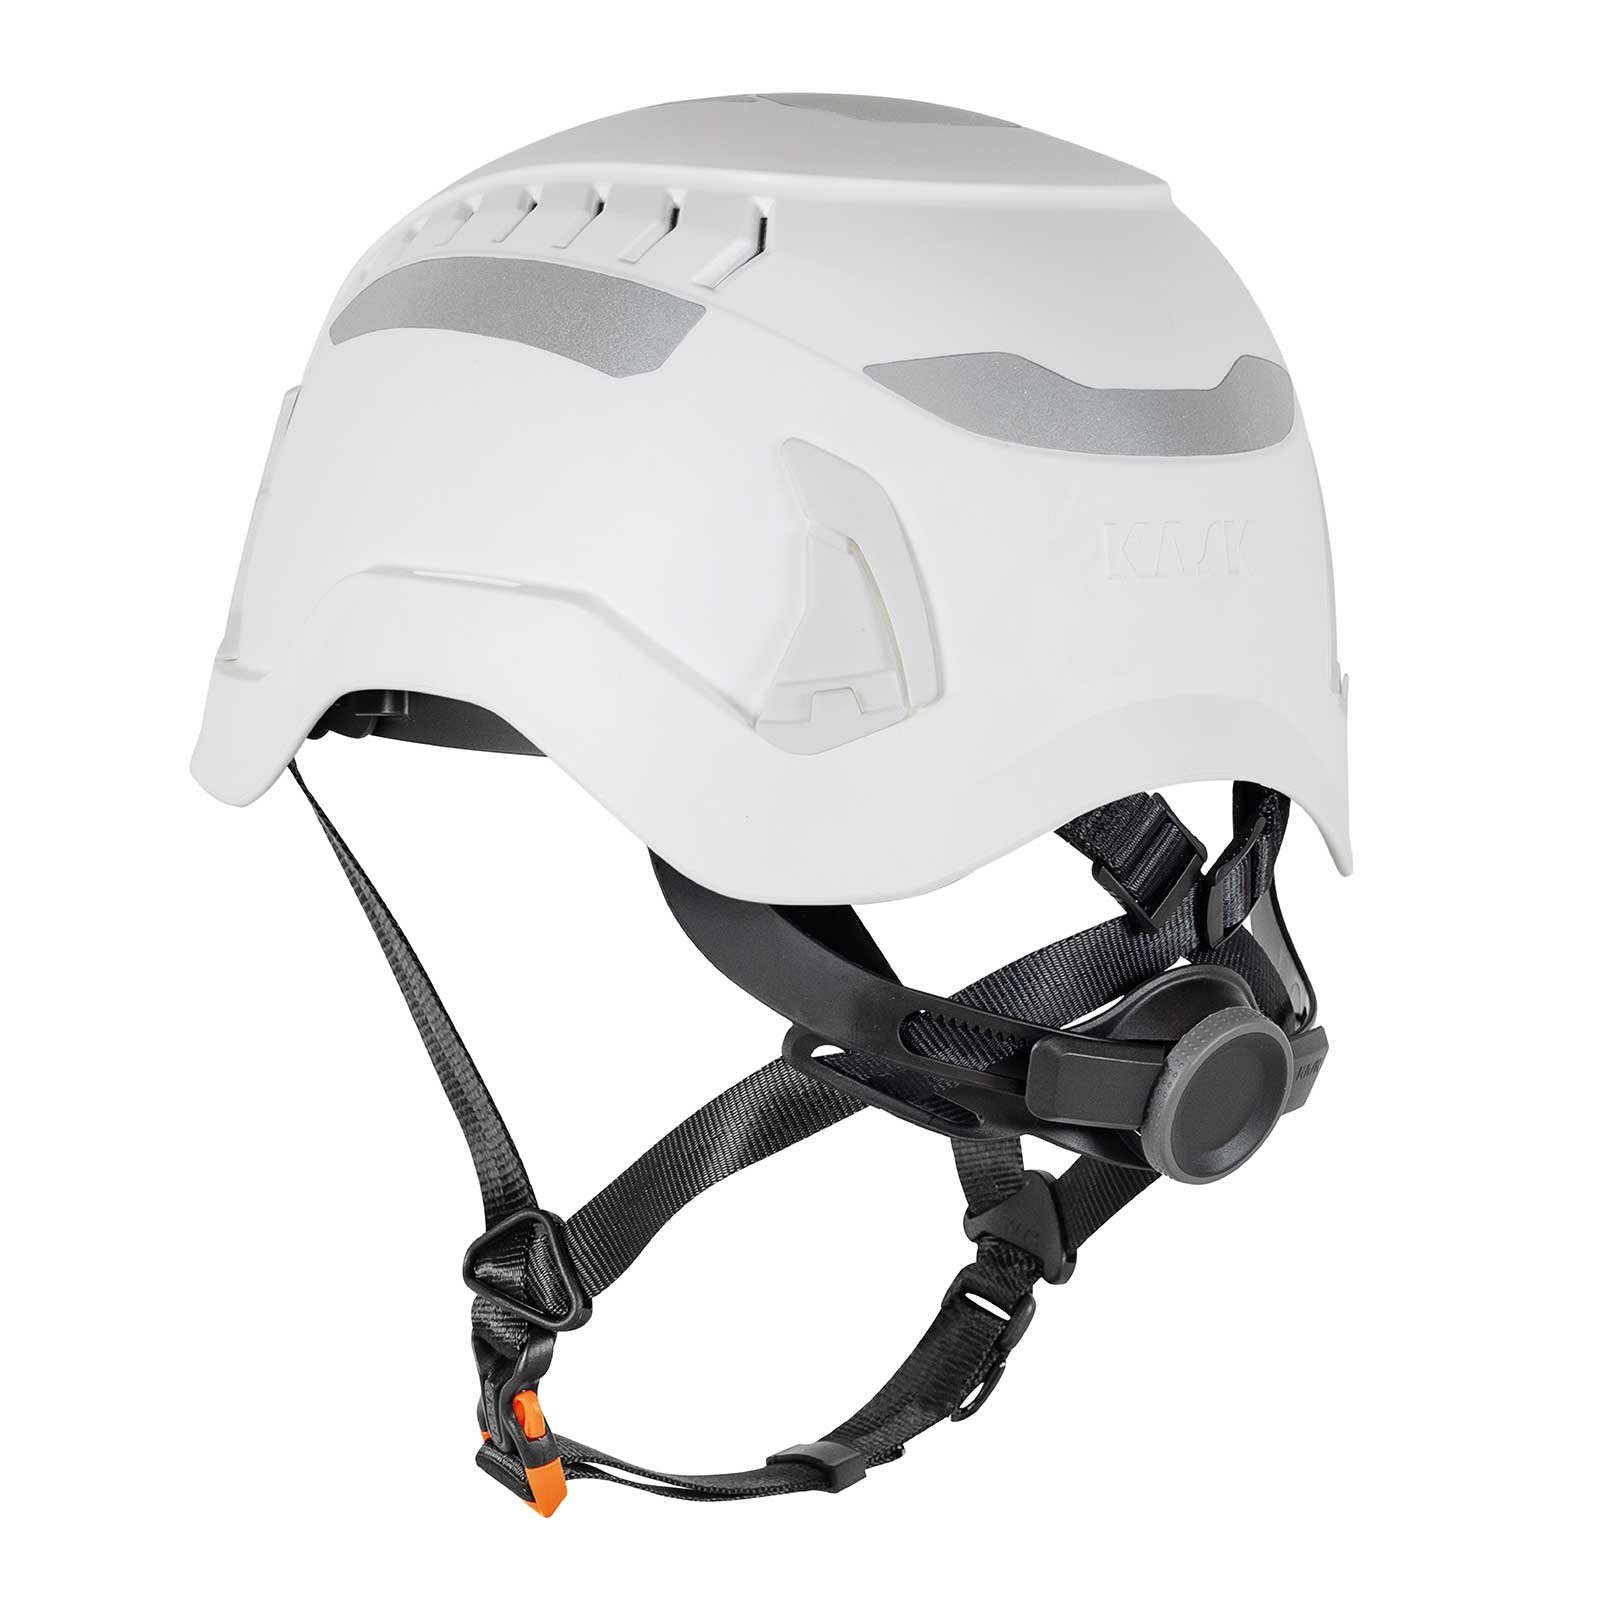 belüftet Kask Bauhelm, weiß Helm, Air Primero Schutzhelm Hi-Viz, Schutzhelm reflektierend,